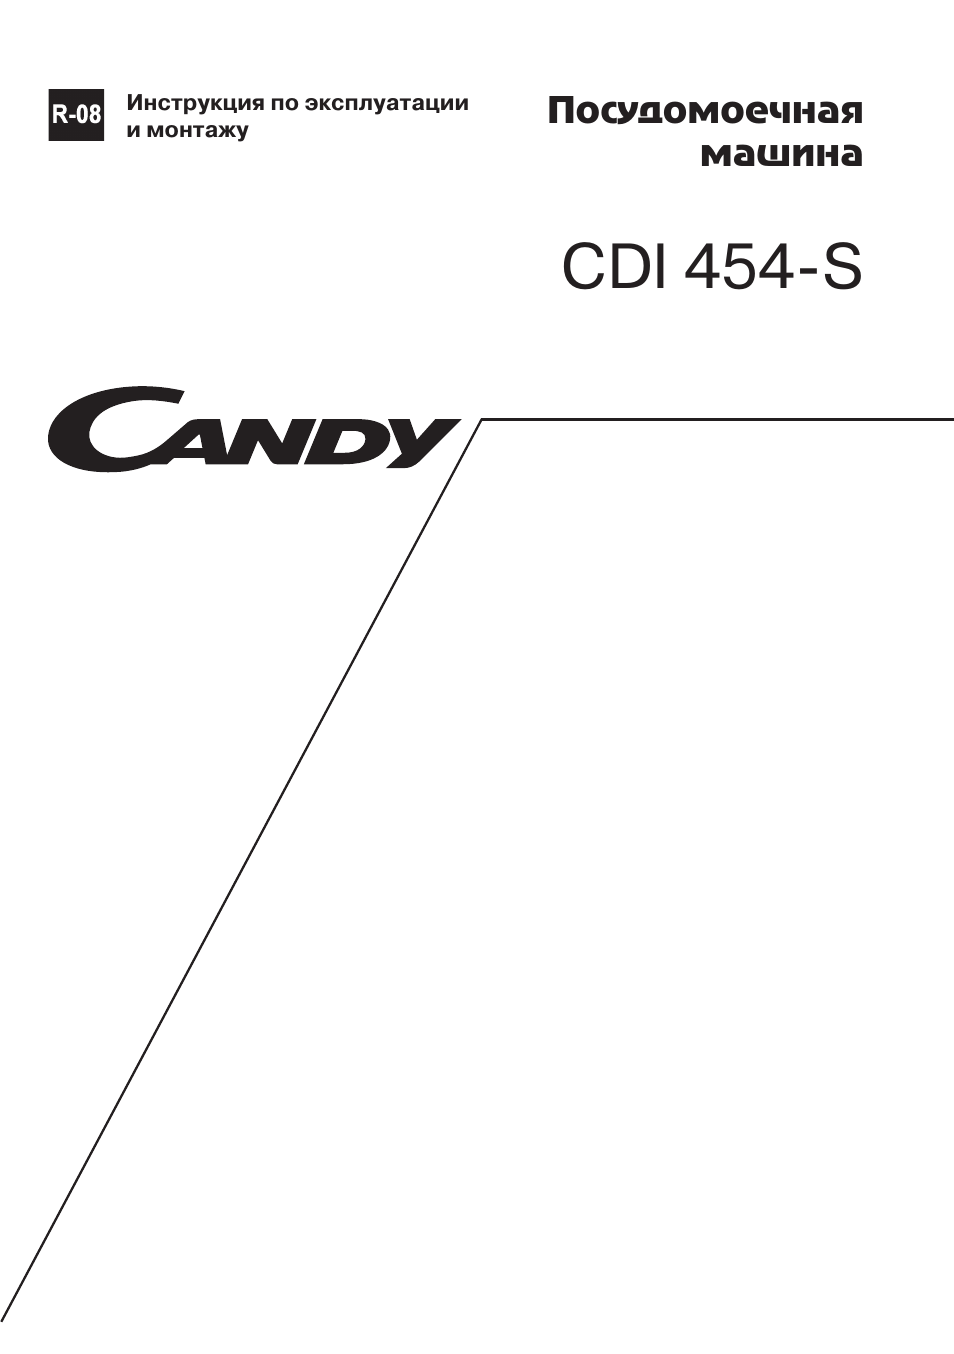 Инструкция candy cdi 454 s